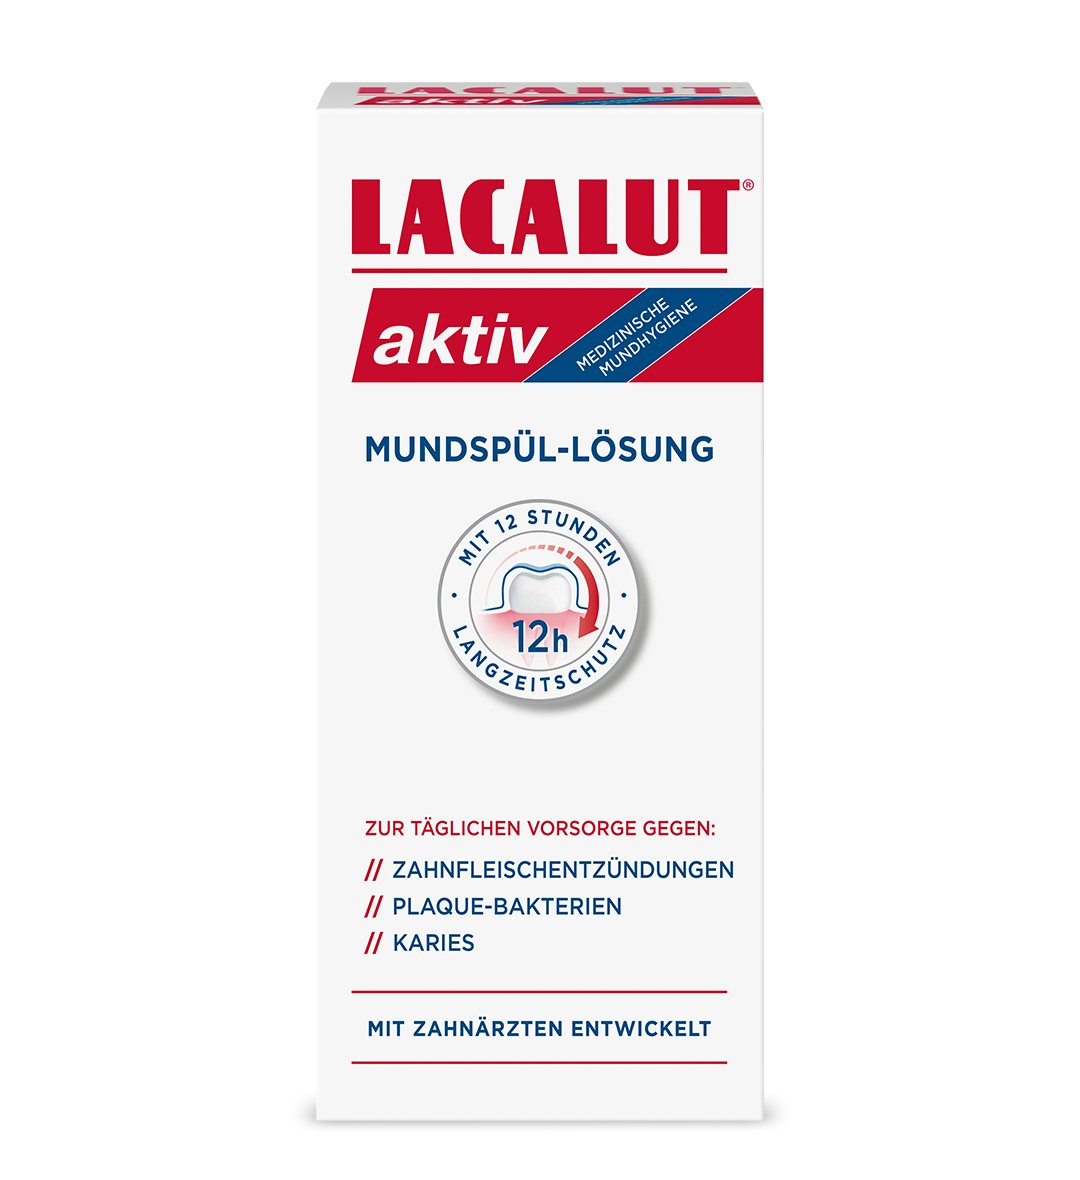 LACALUT® aktiv Mundspül-Lösung 